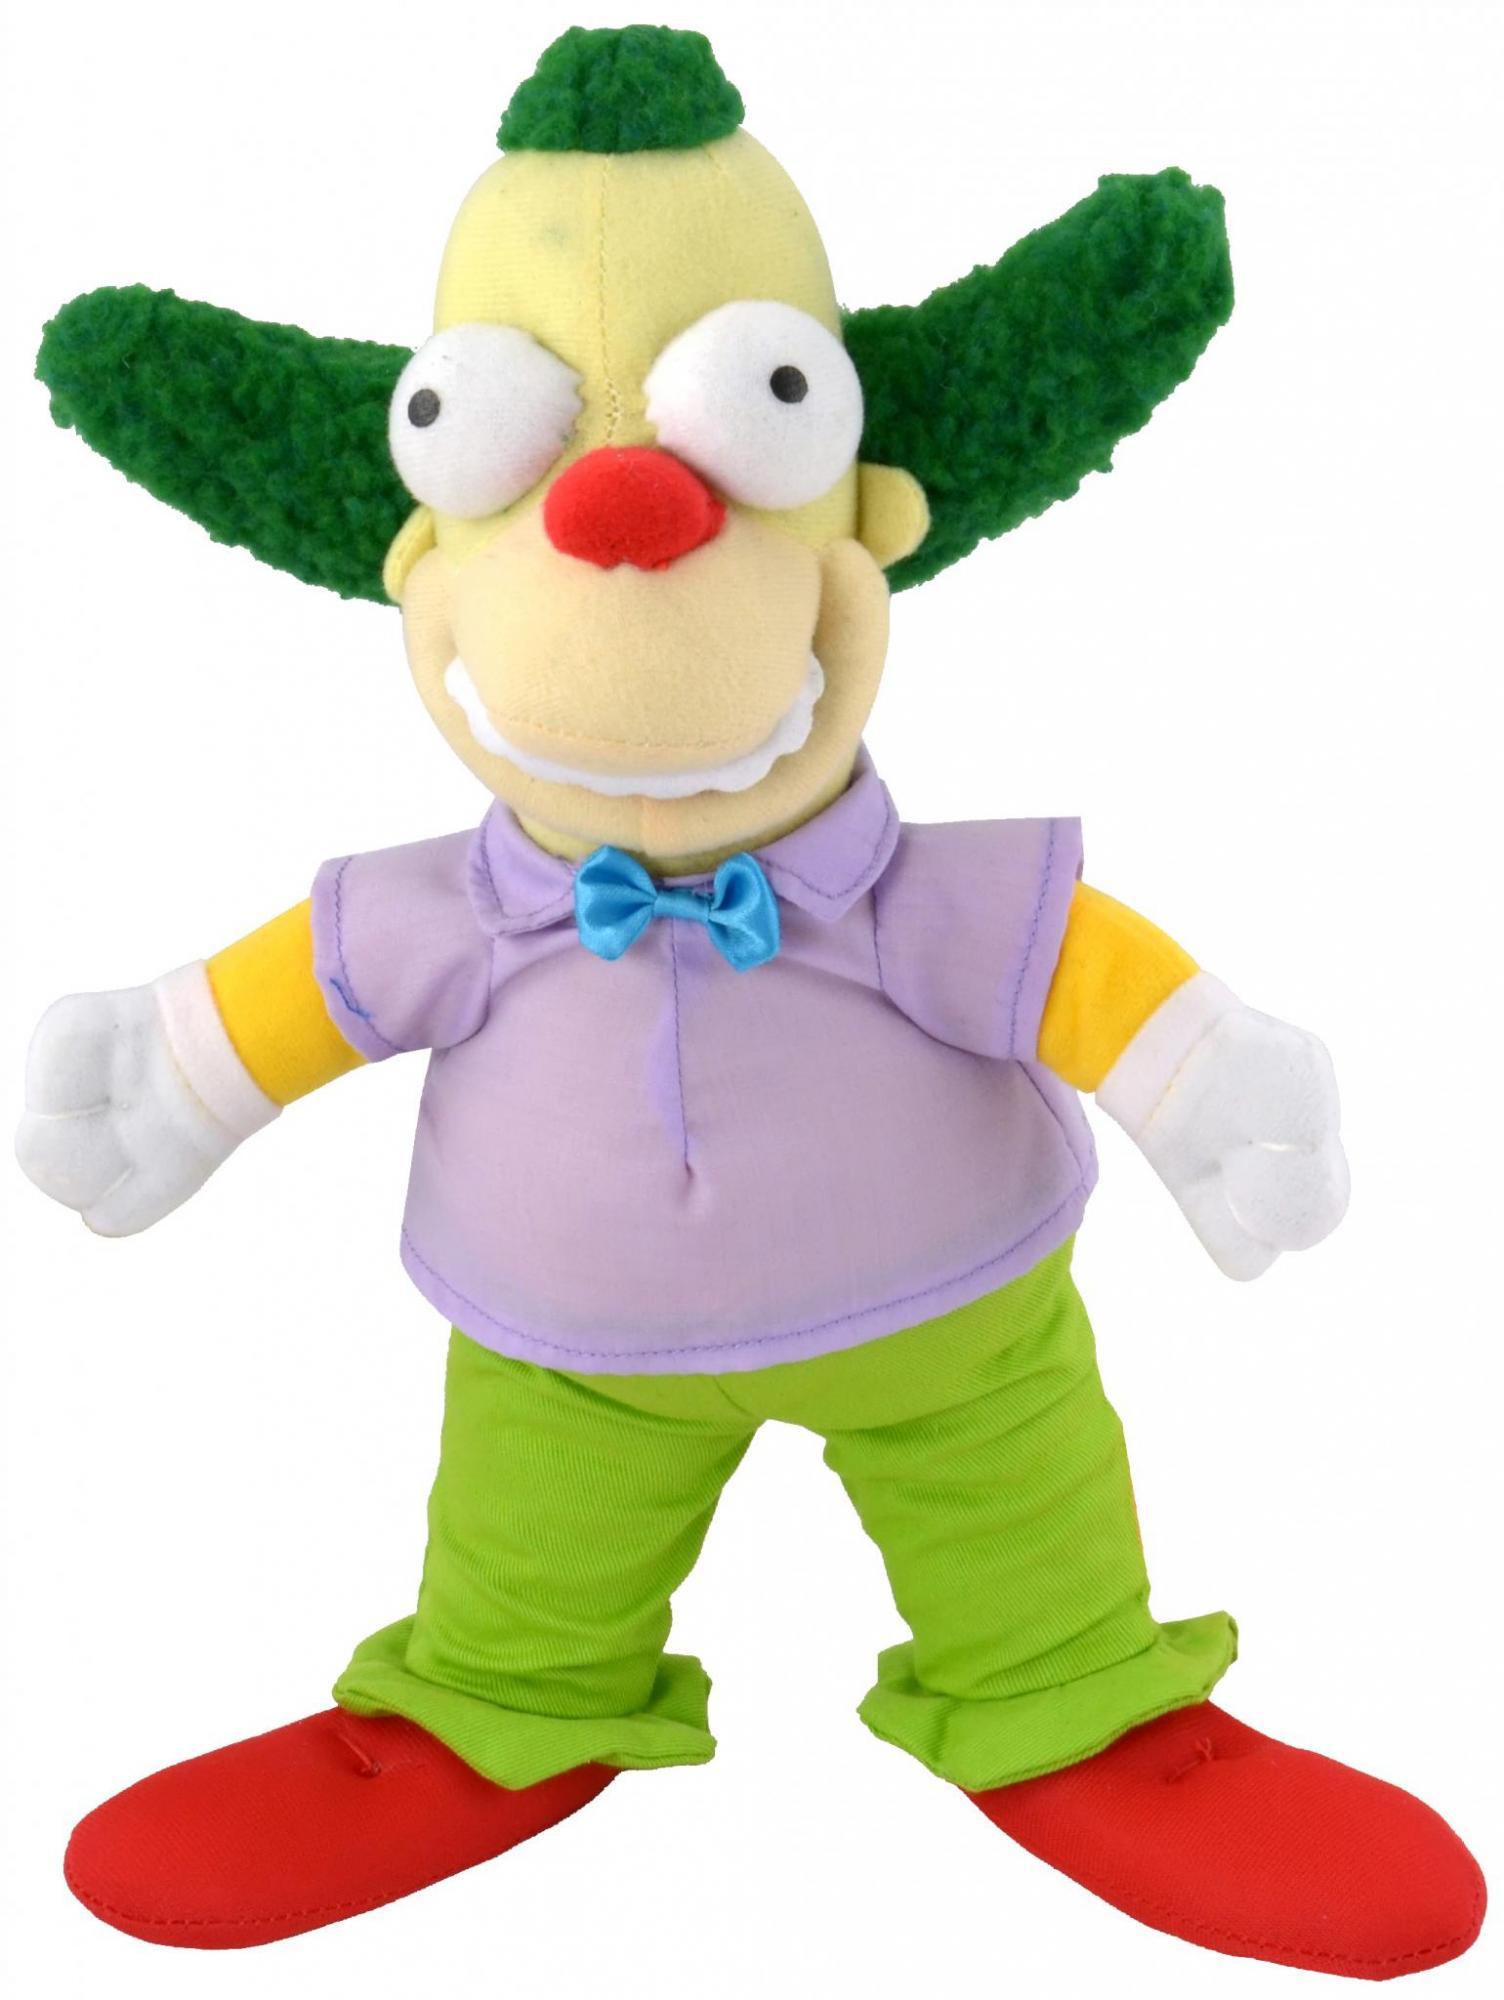 Toko Boneka Custom Krusty the Clown - Toko Kain Velboa, Yelvow, Nylex, Rasf...